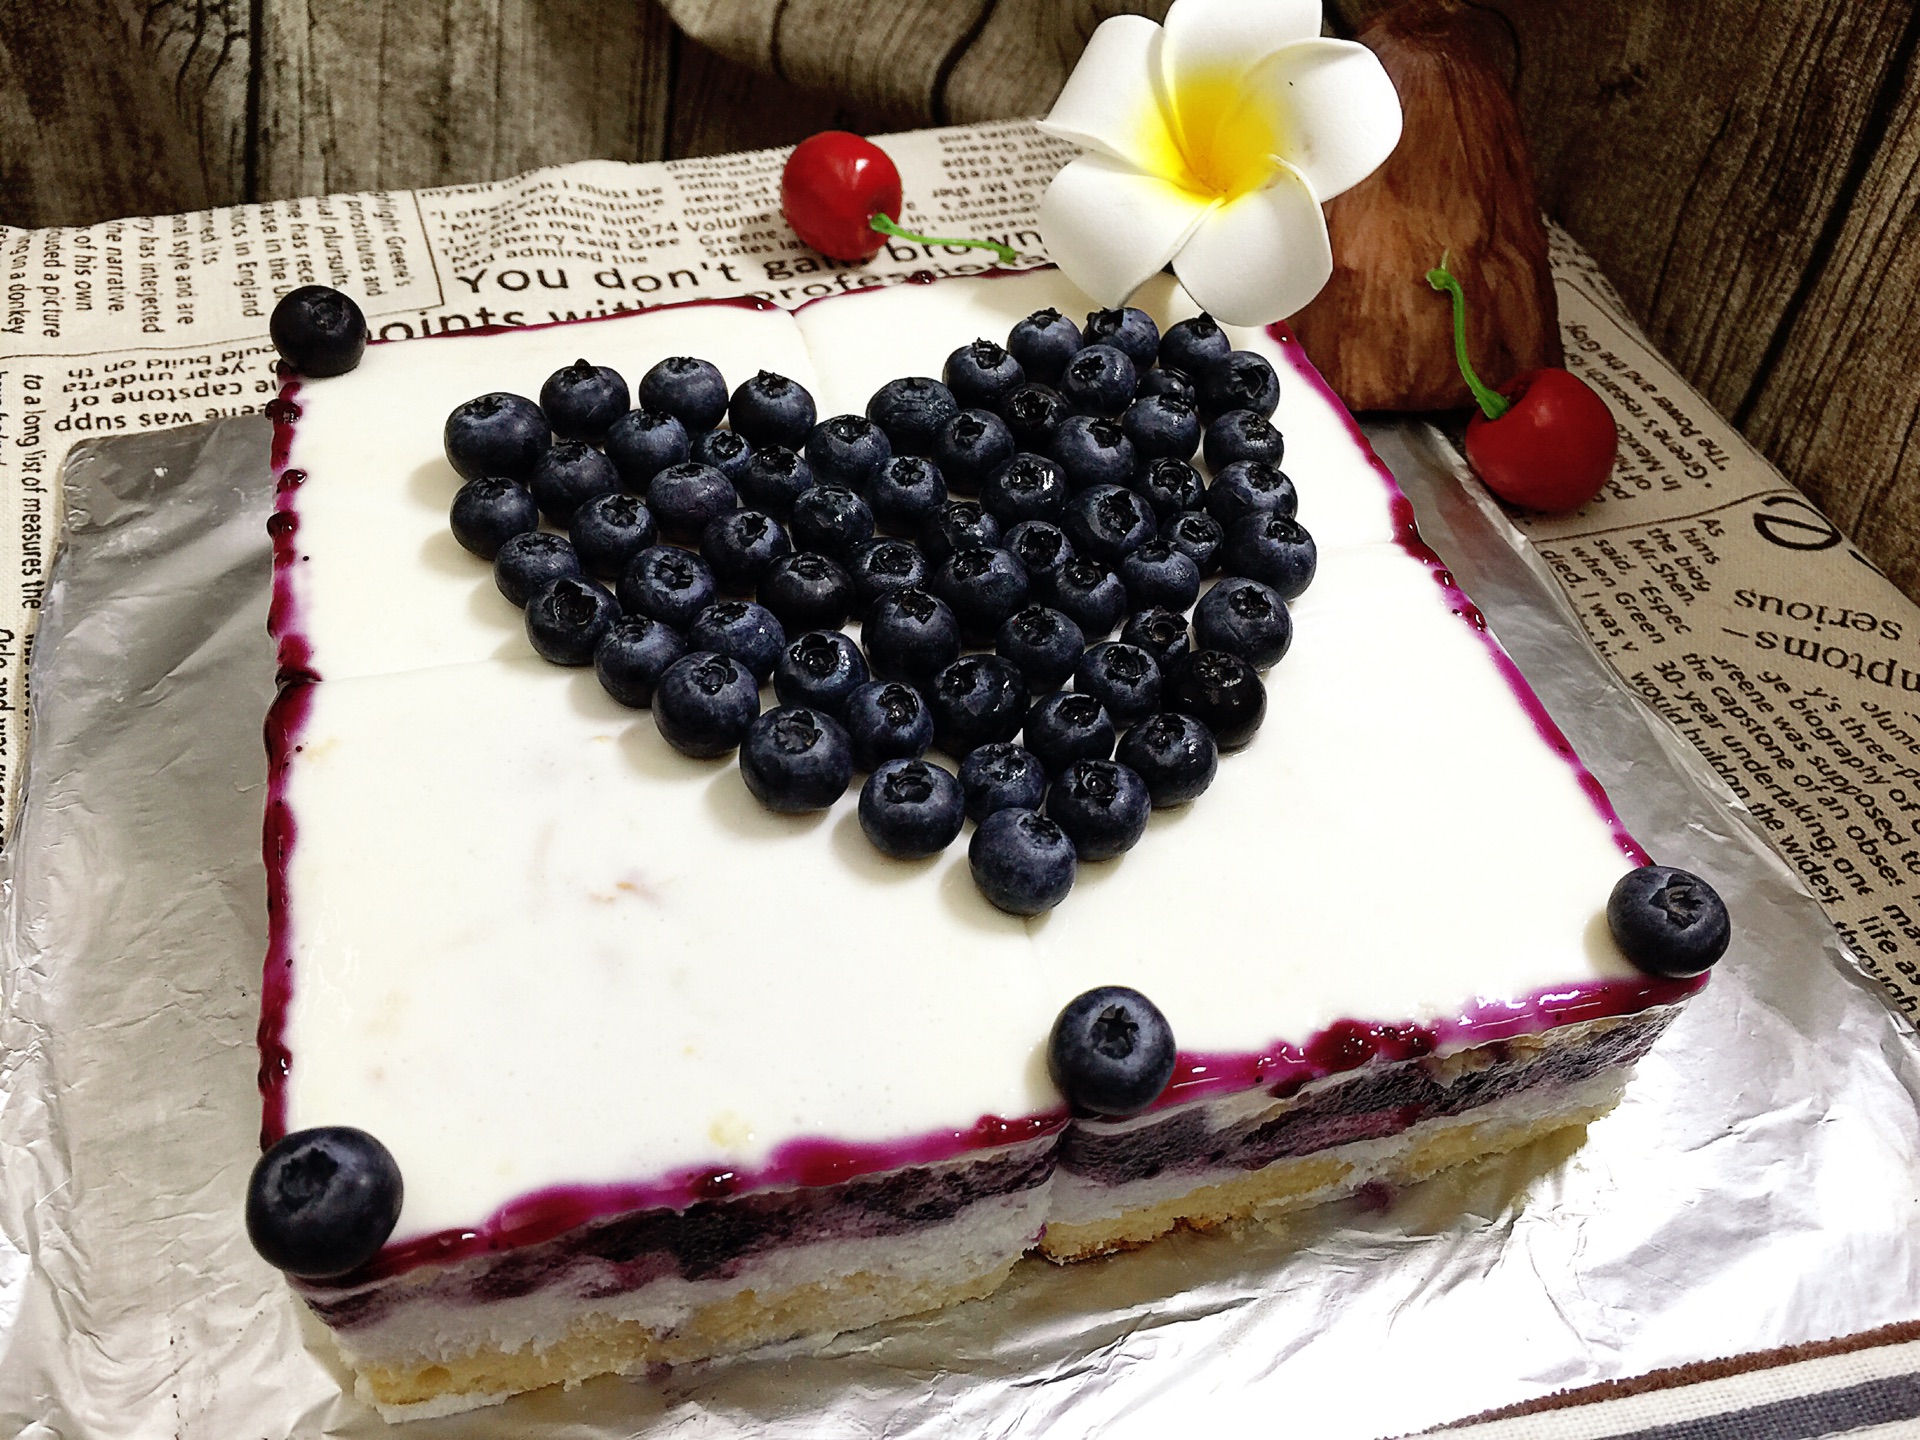 蓝莓芝士蛋糕高清图片大全【蛋糕图片】_百悦米西点培训